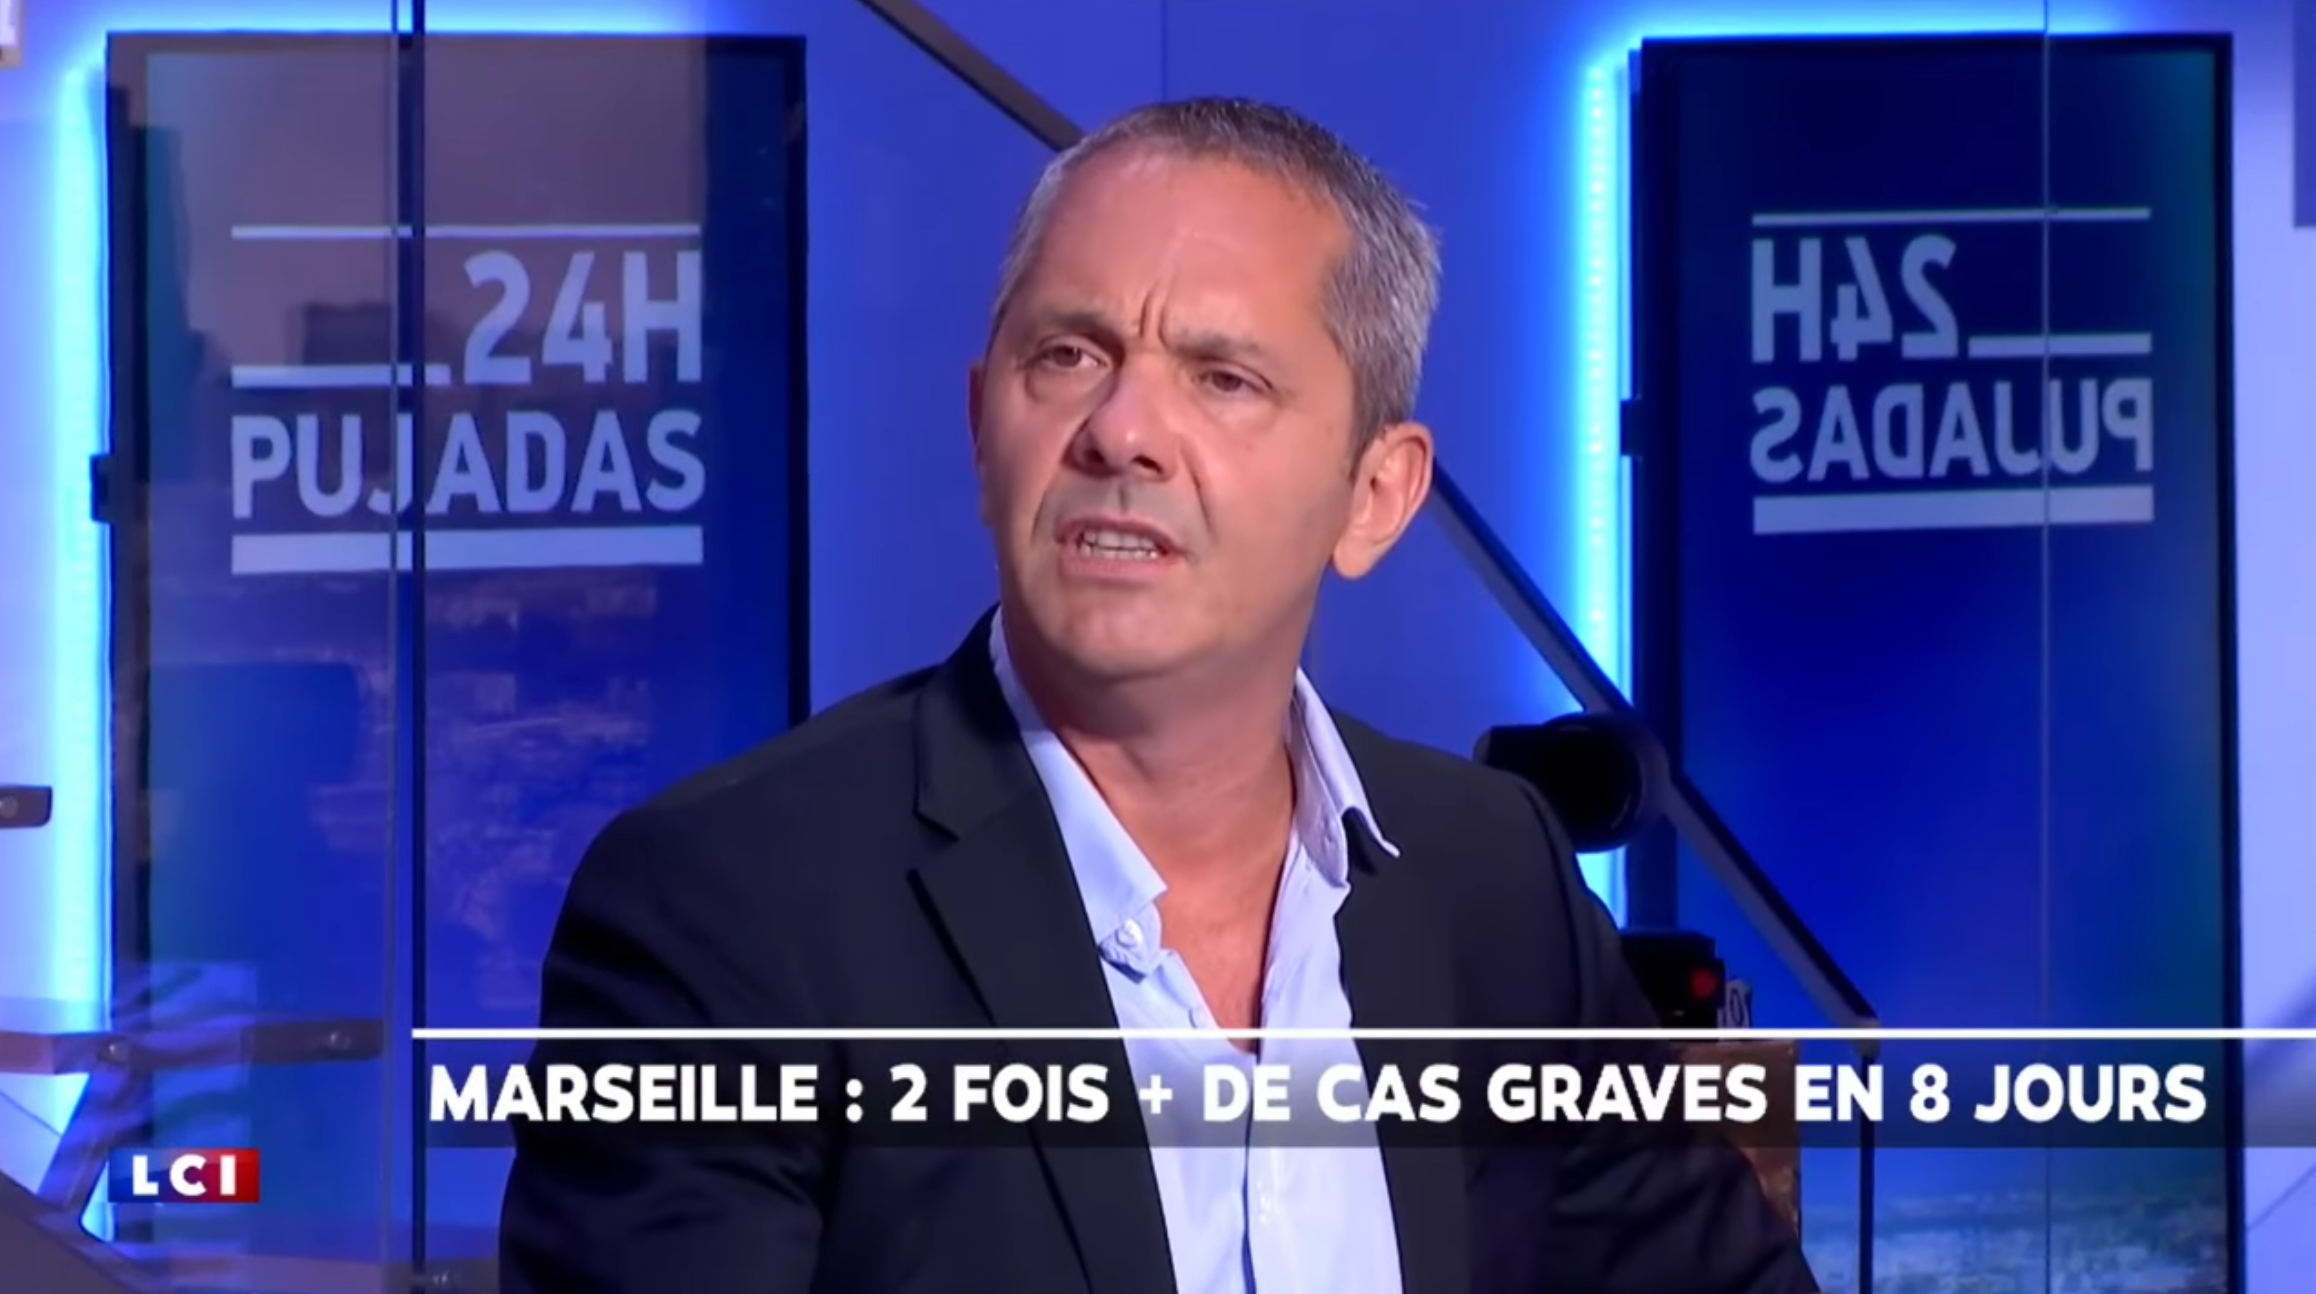 Le Pr Philippe Parola s’exprime sur les chiffres soi-disant alarmistes de Marseille (VIDÉO)